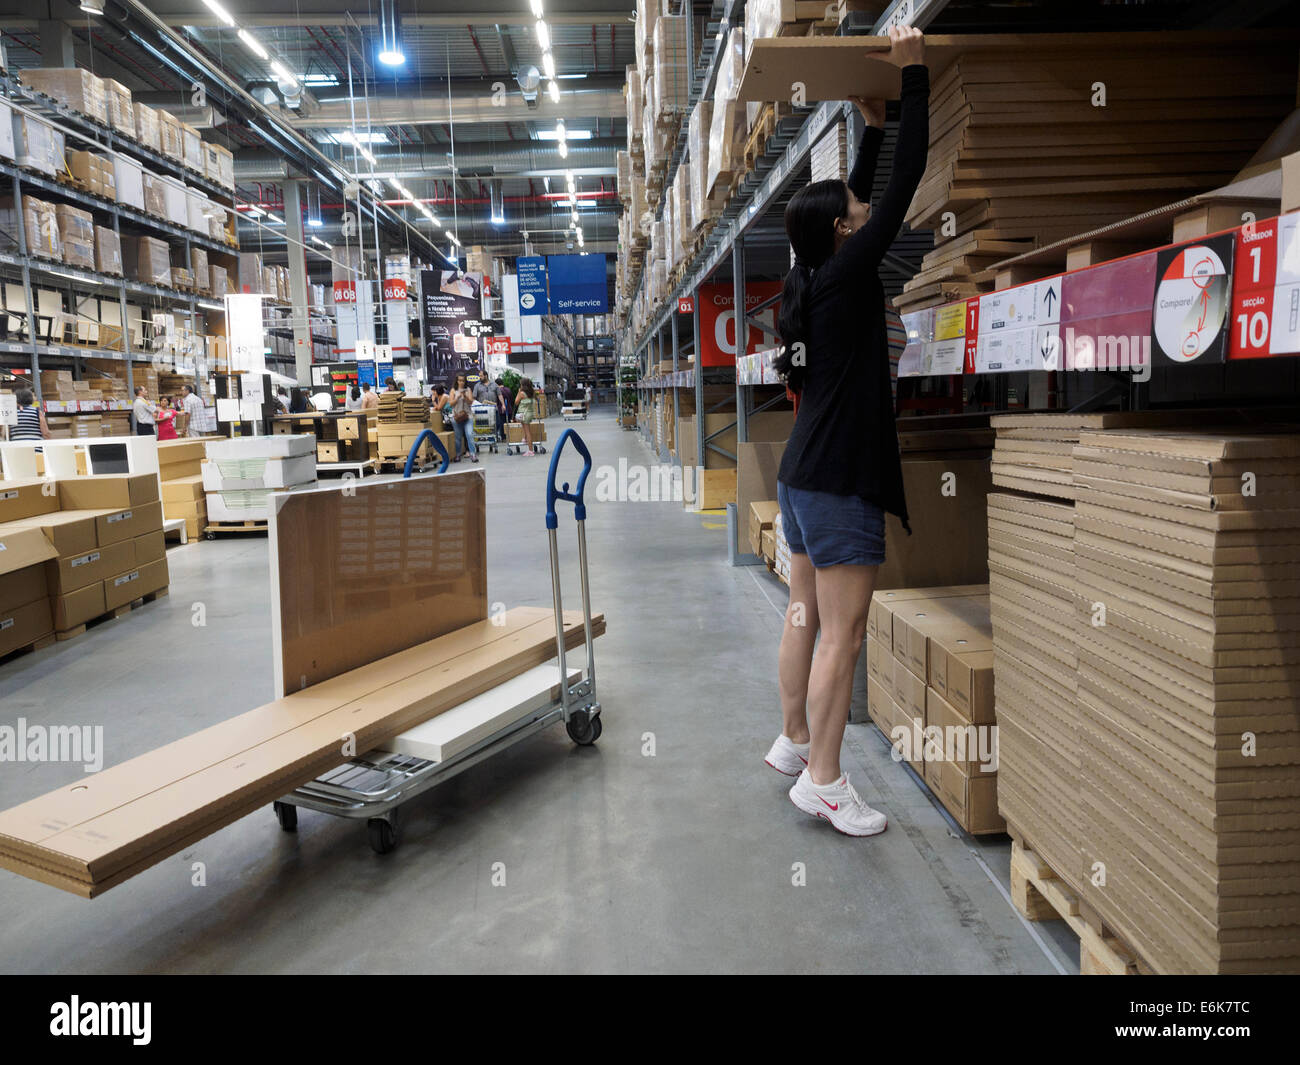 Ramasser des clients à la boutique de meubles Ikea entrepôt Photo Stock -  Alamy